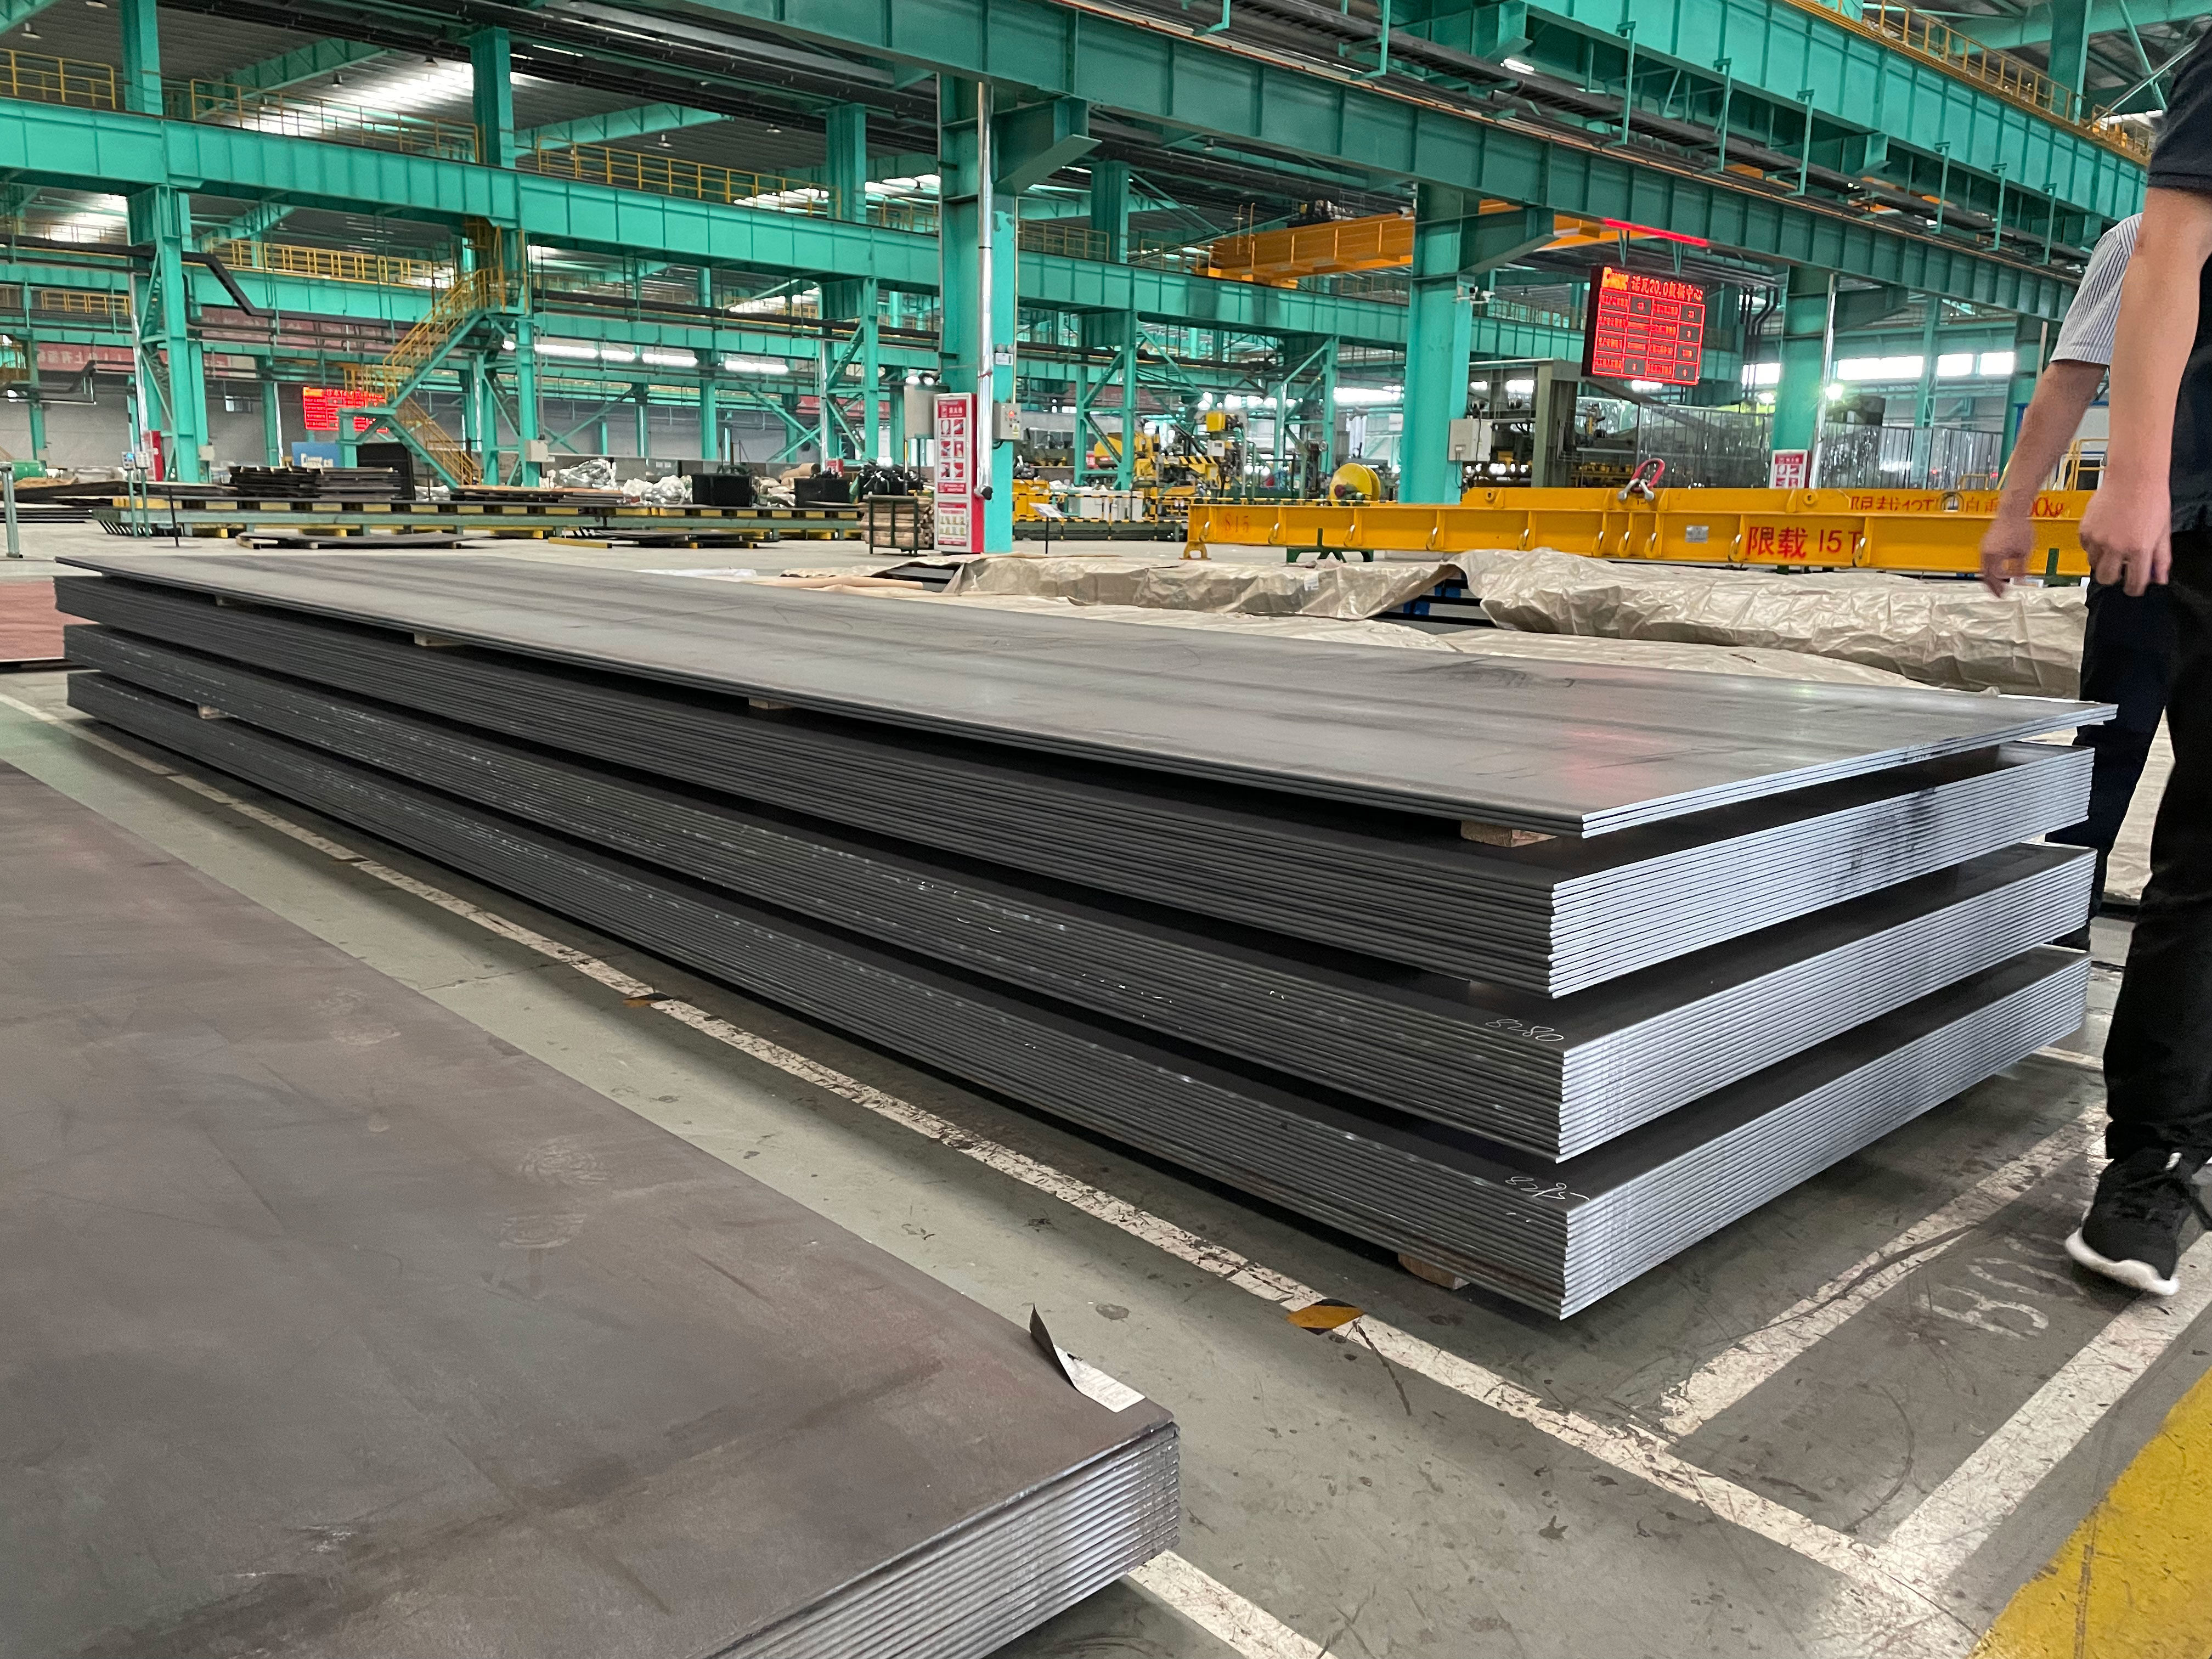 Shanghai Zhongze Yi Metal Disassembly Co., Ltd. est fier de son produit : plaque d'acier au carbone